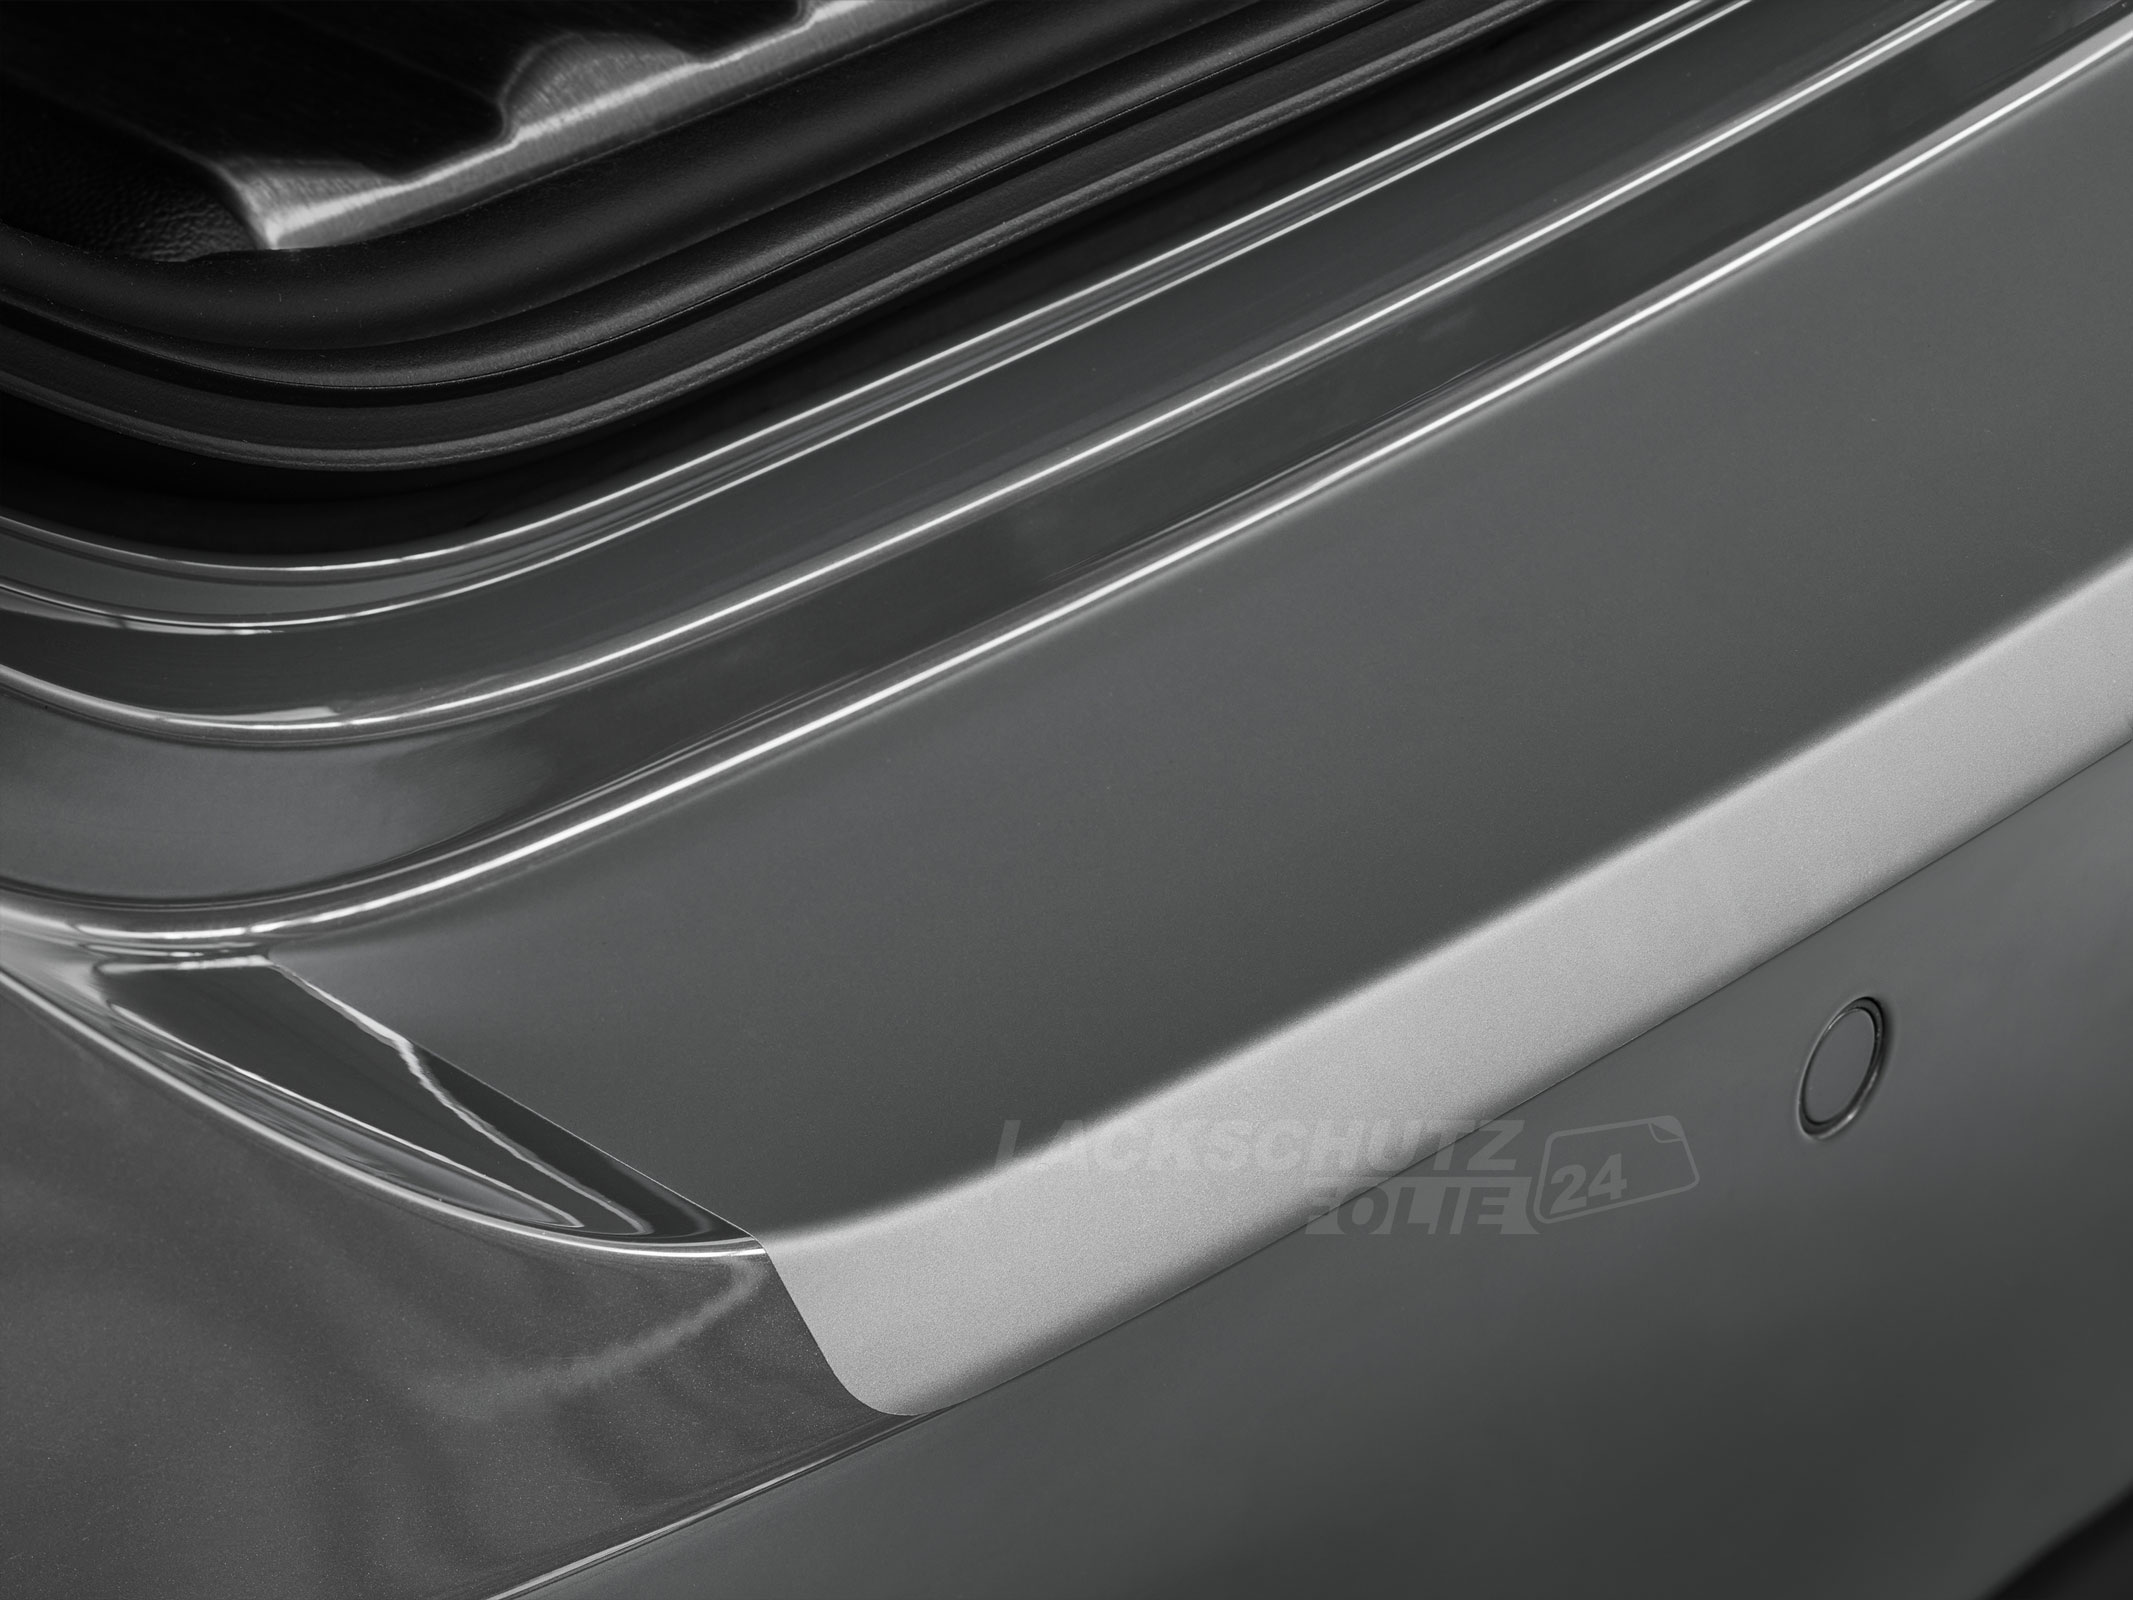 Ladekantenschutzfolie - Transparent Glatt MATT 110 µm stark  für Ford Galaxy  (II) BJ 2007-09/2015, inkl. Facelift